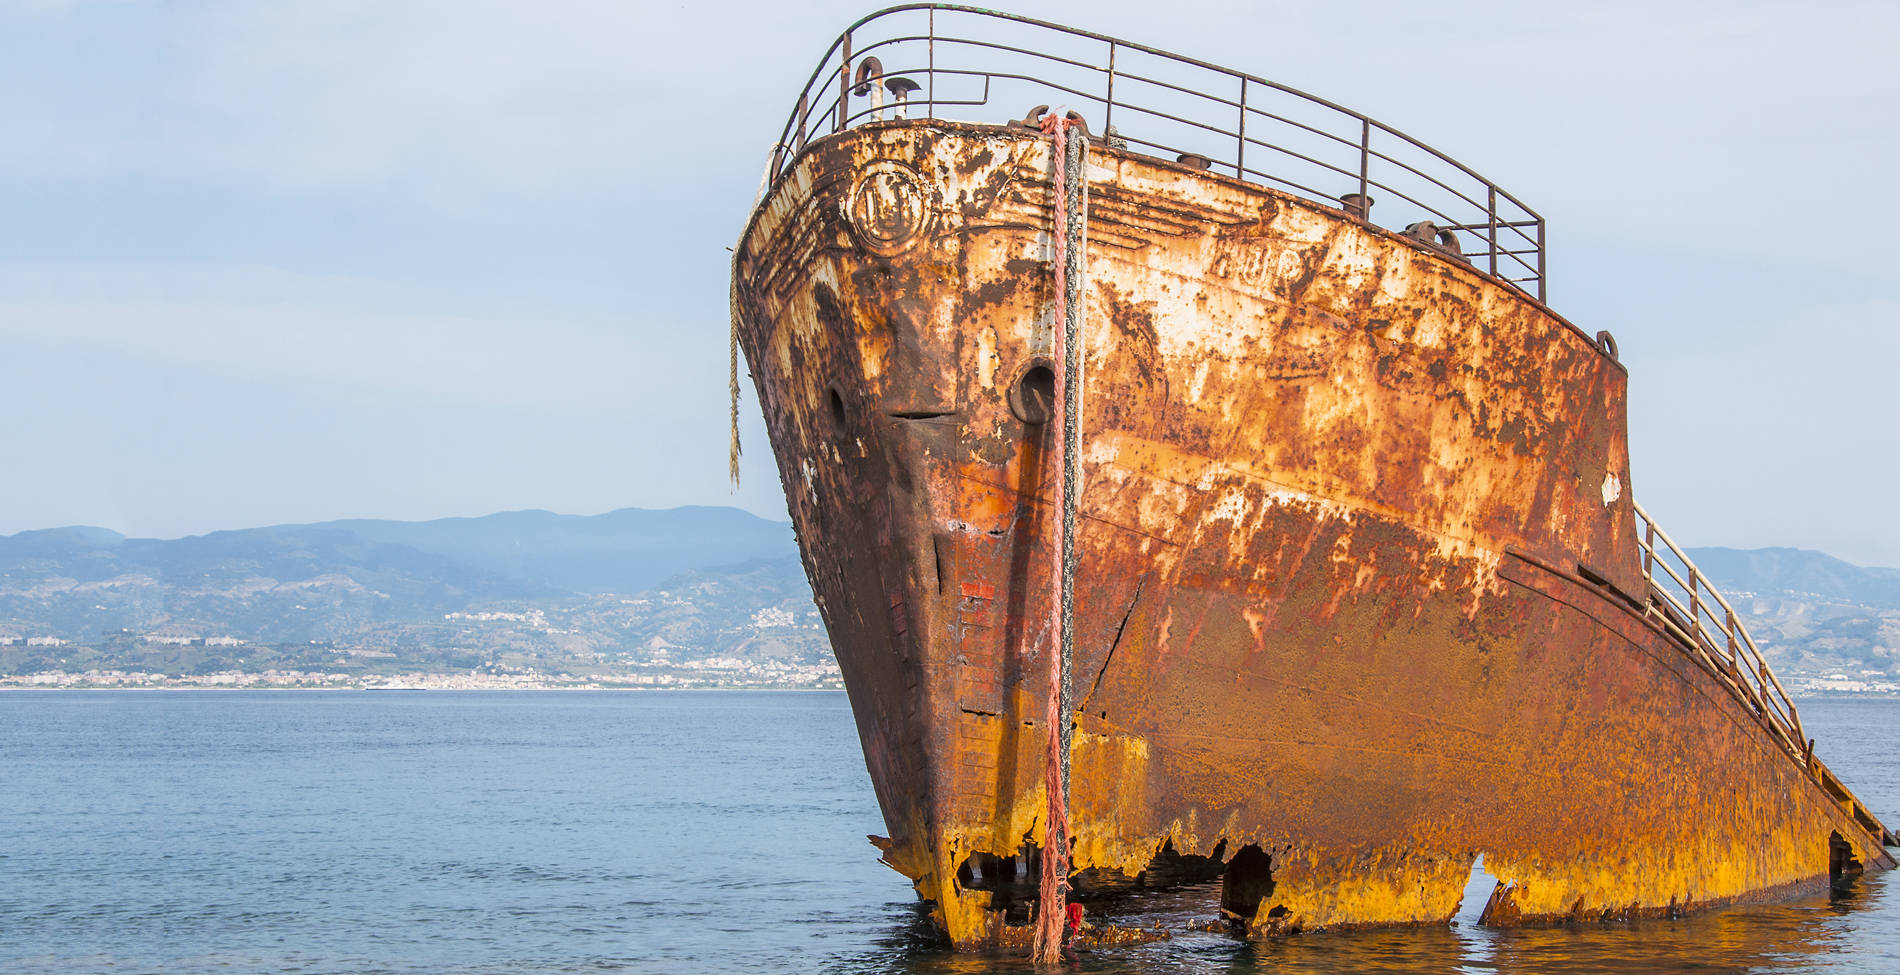 Το ναυάγιο που καθιέρωσε το απαγορευτικό απόπλου στην ελληνική ακτοπλοΐα